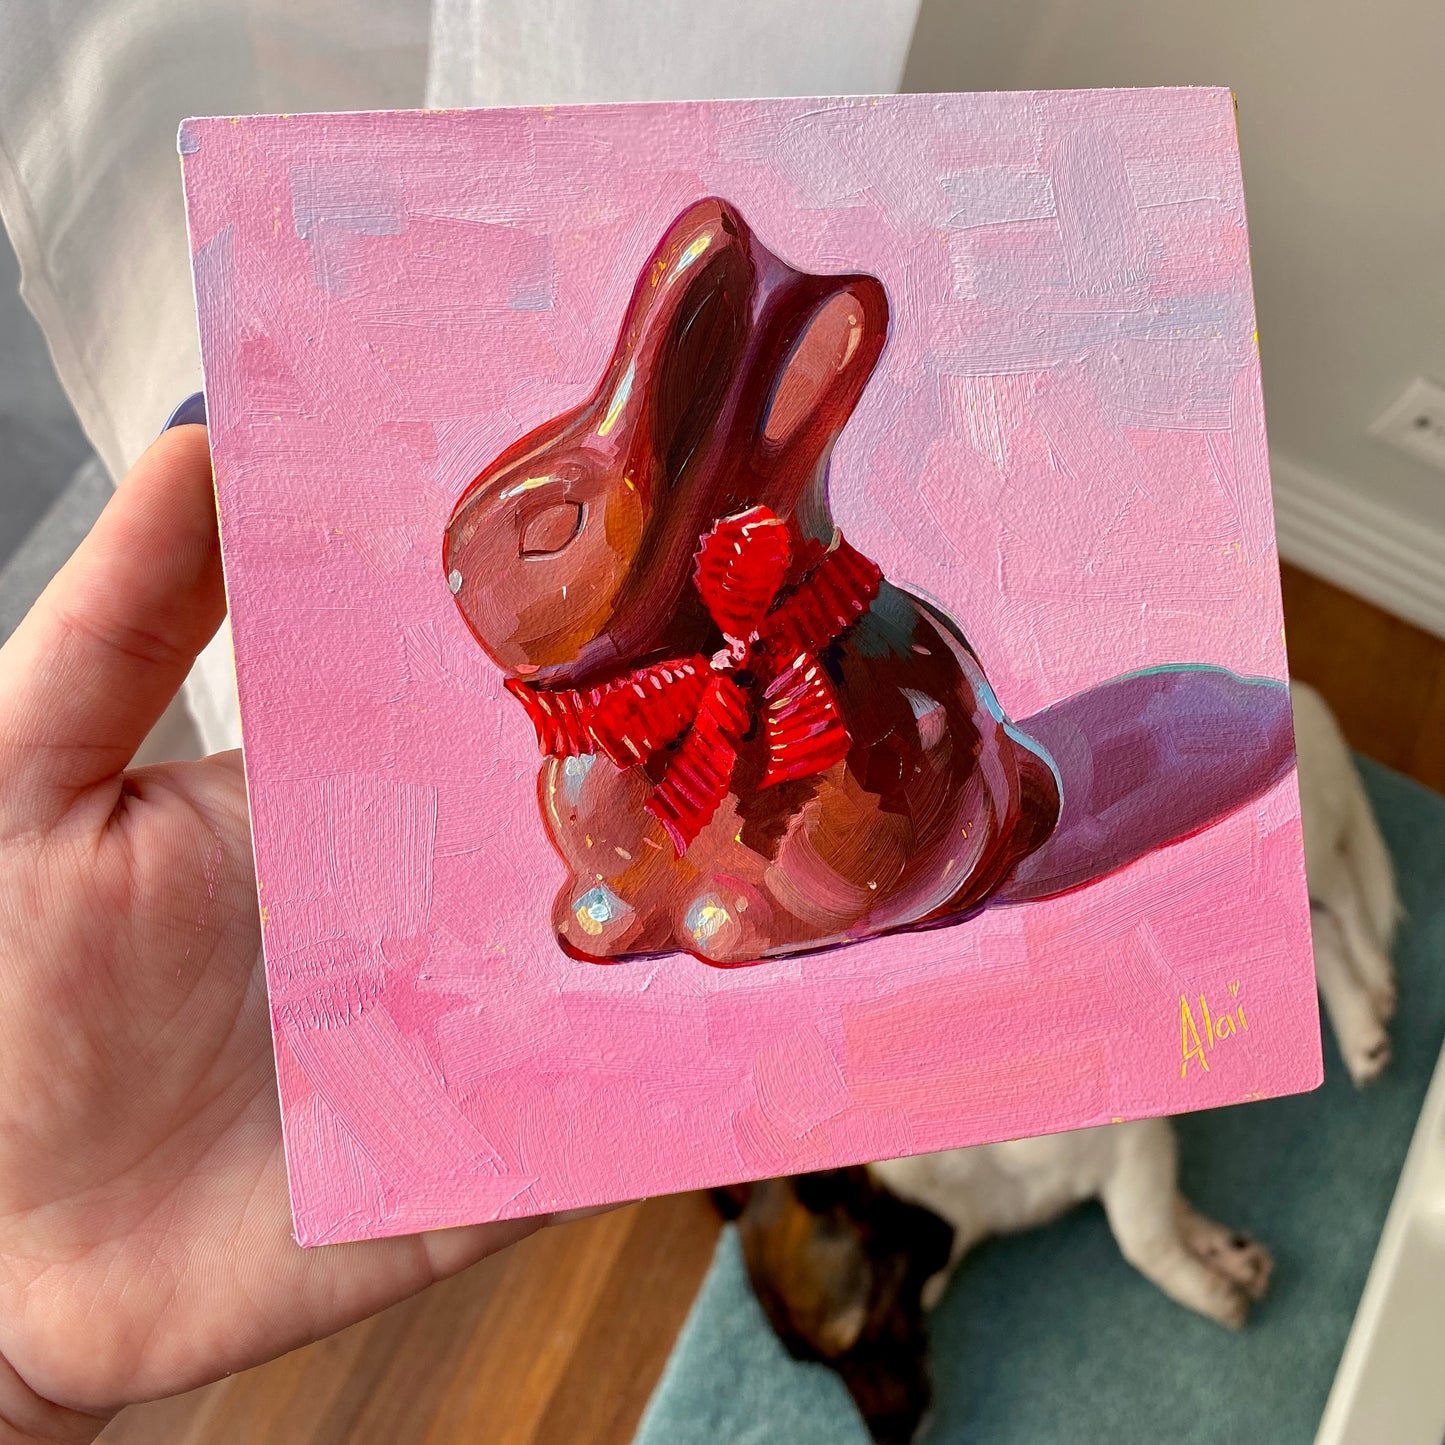 Chocolate bunny - Original Oil Painting